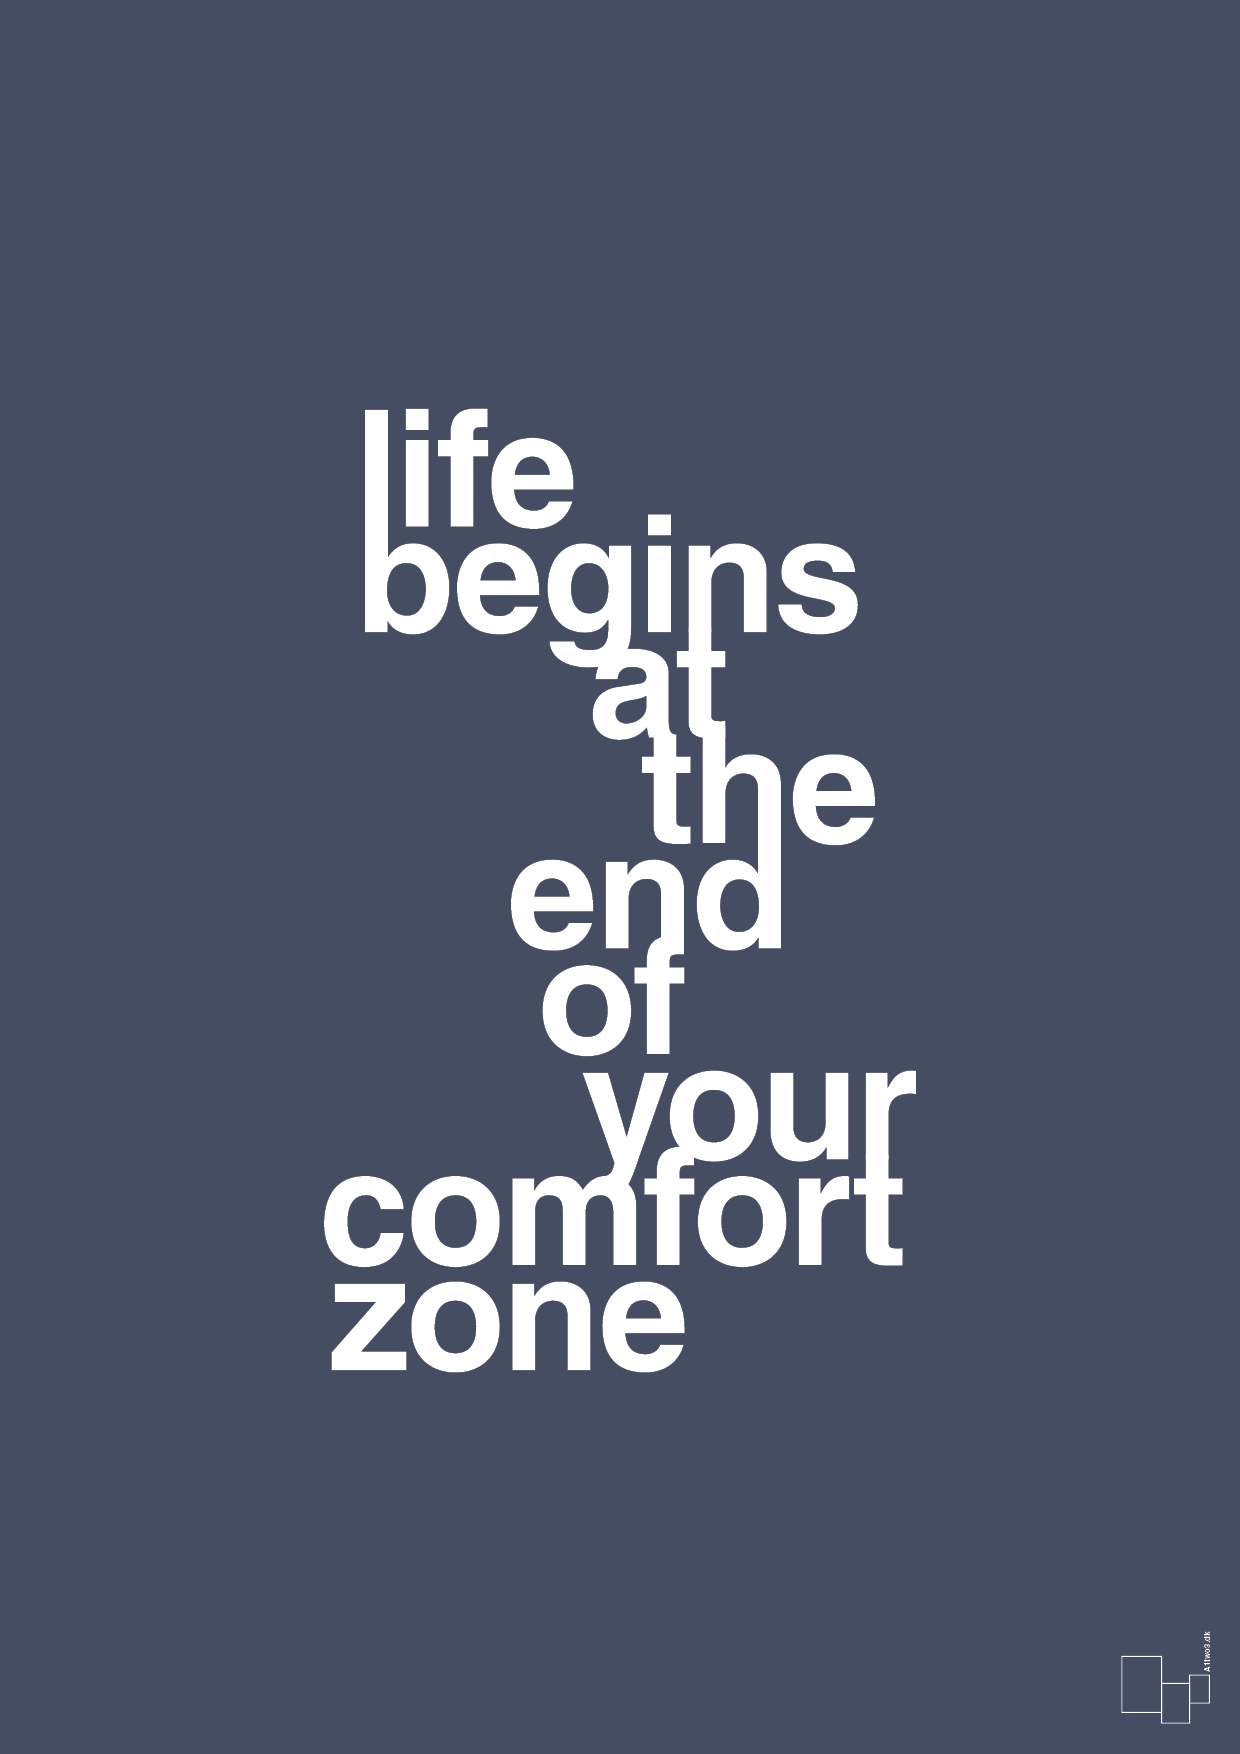 life begins at the end of your comfort zone - Plakat med Ordsprog i Petrol